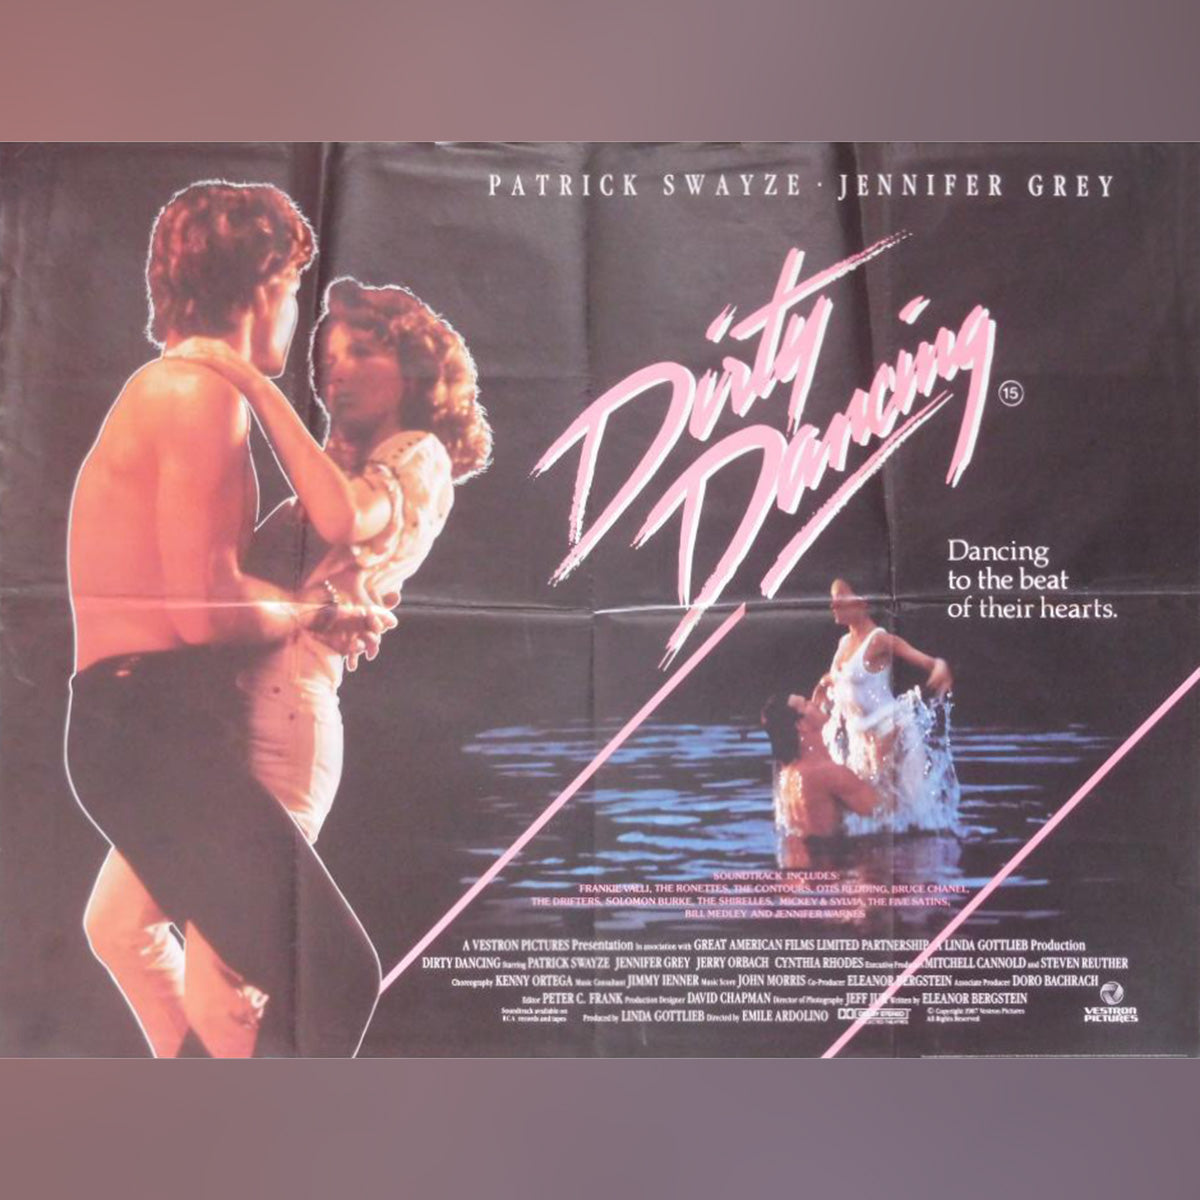 Original Movie Poster of Dirty Dancing (1987)